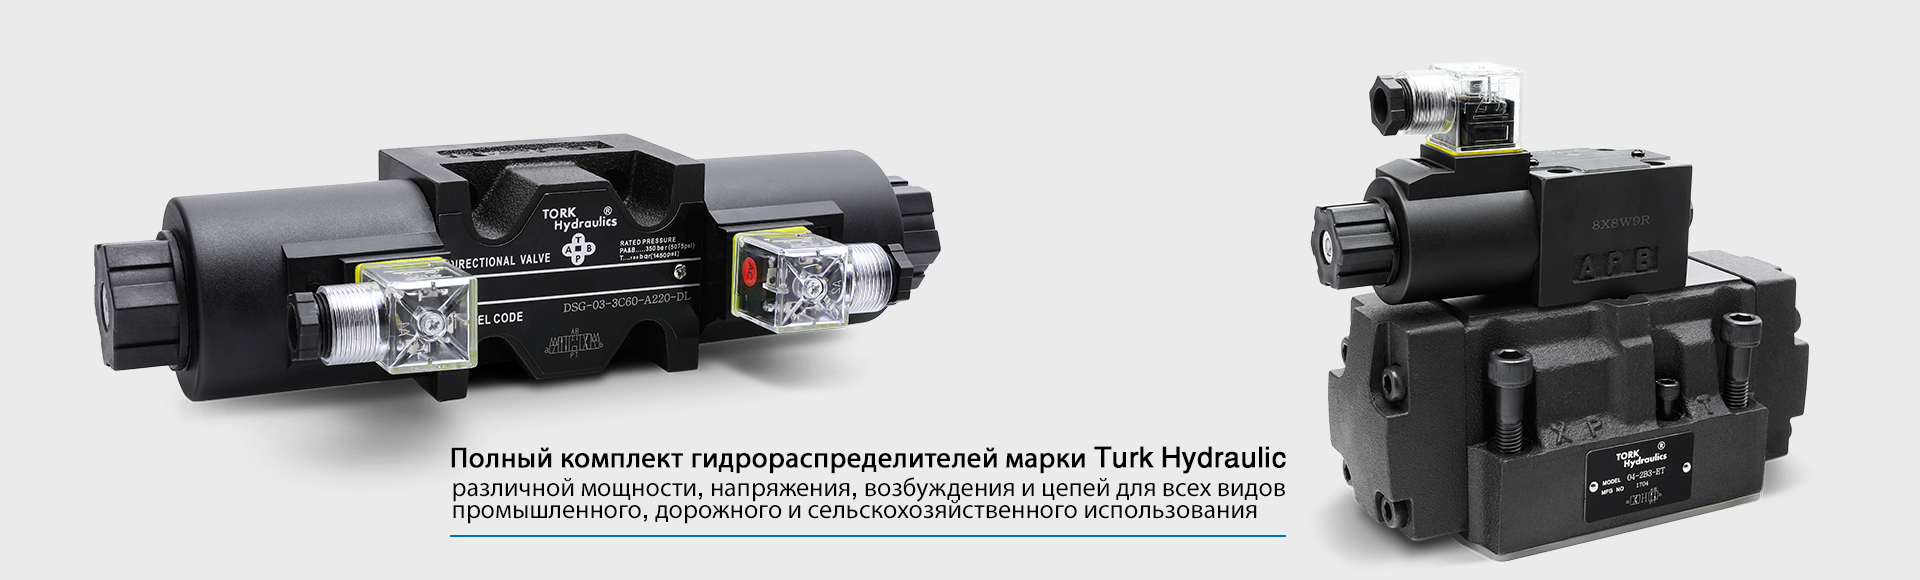 پرشر سوئیچ طرح قدیم ترک هیدرولیکHED10A20-350 TORK-hydraulics